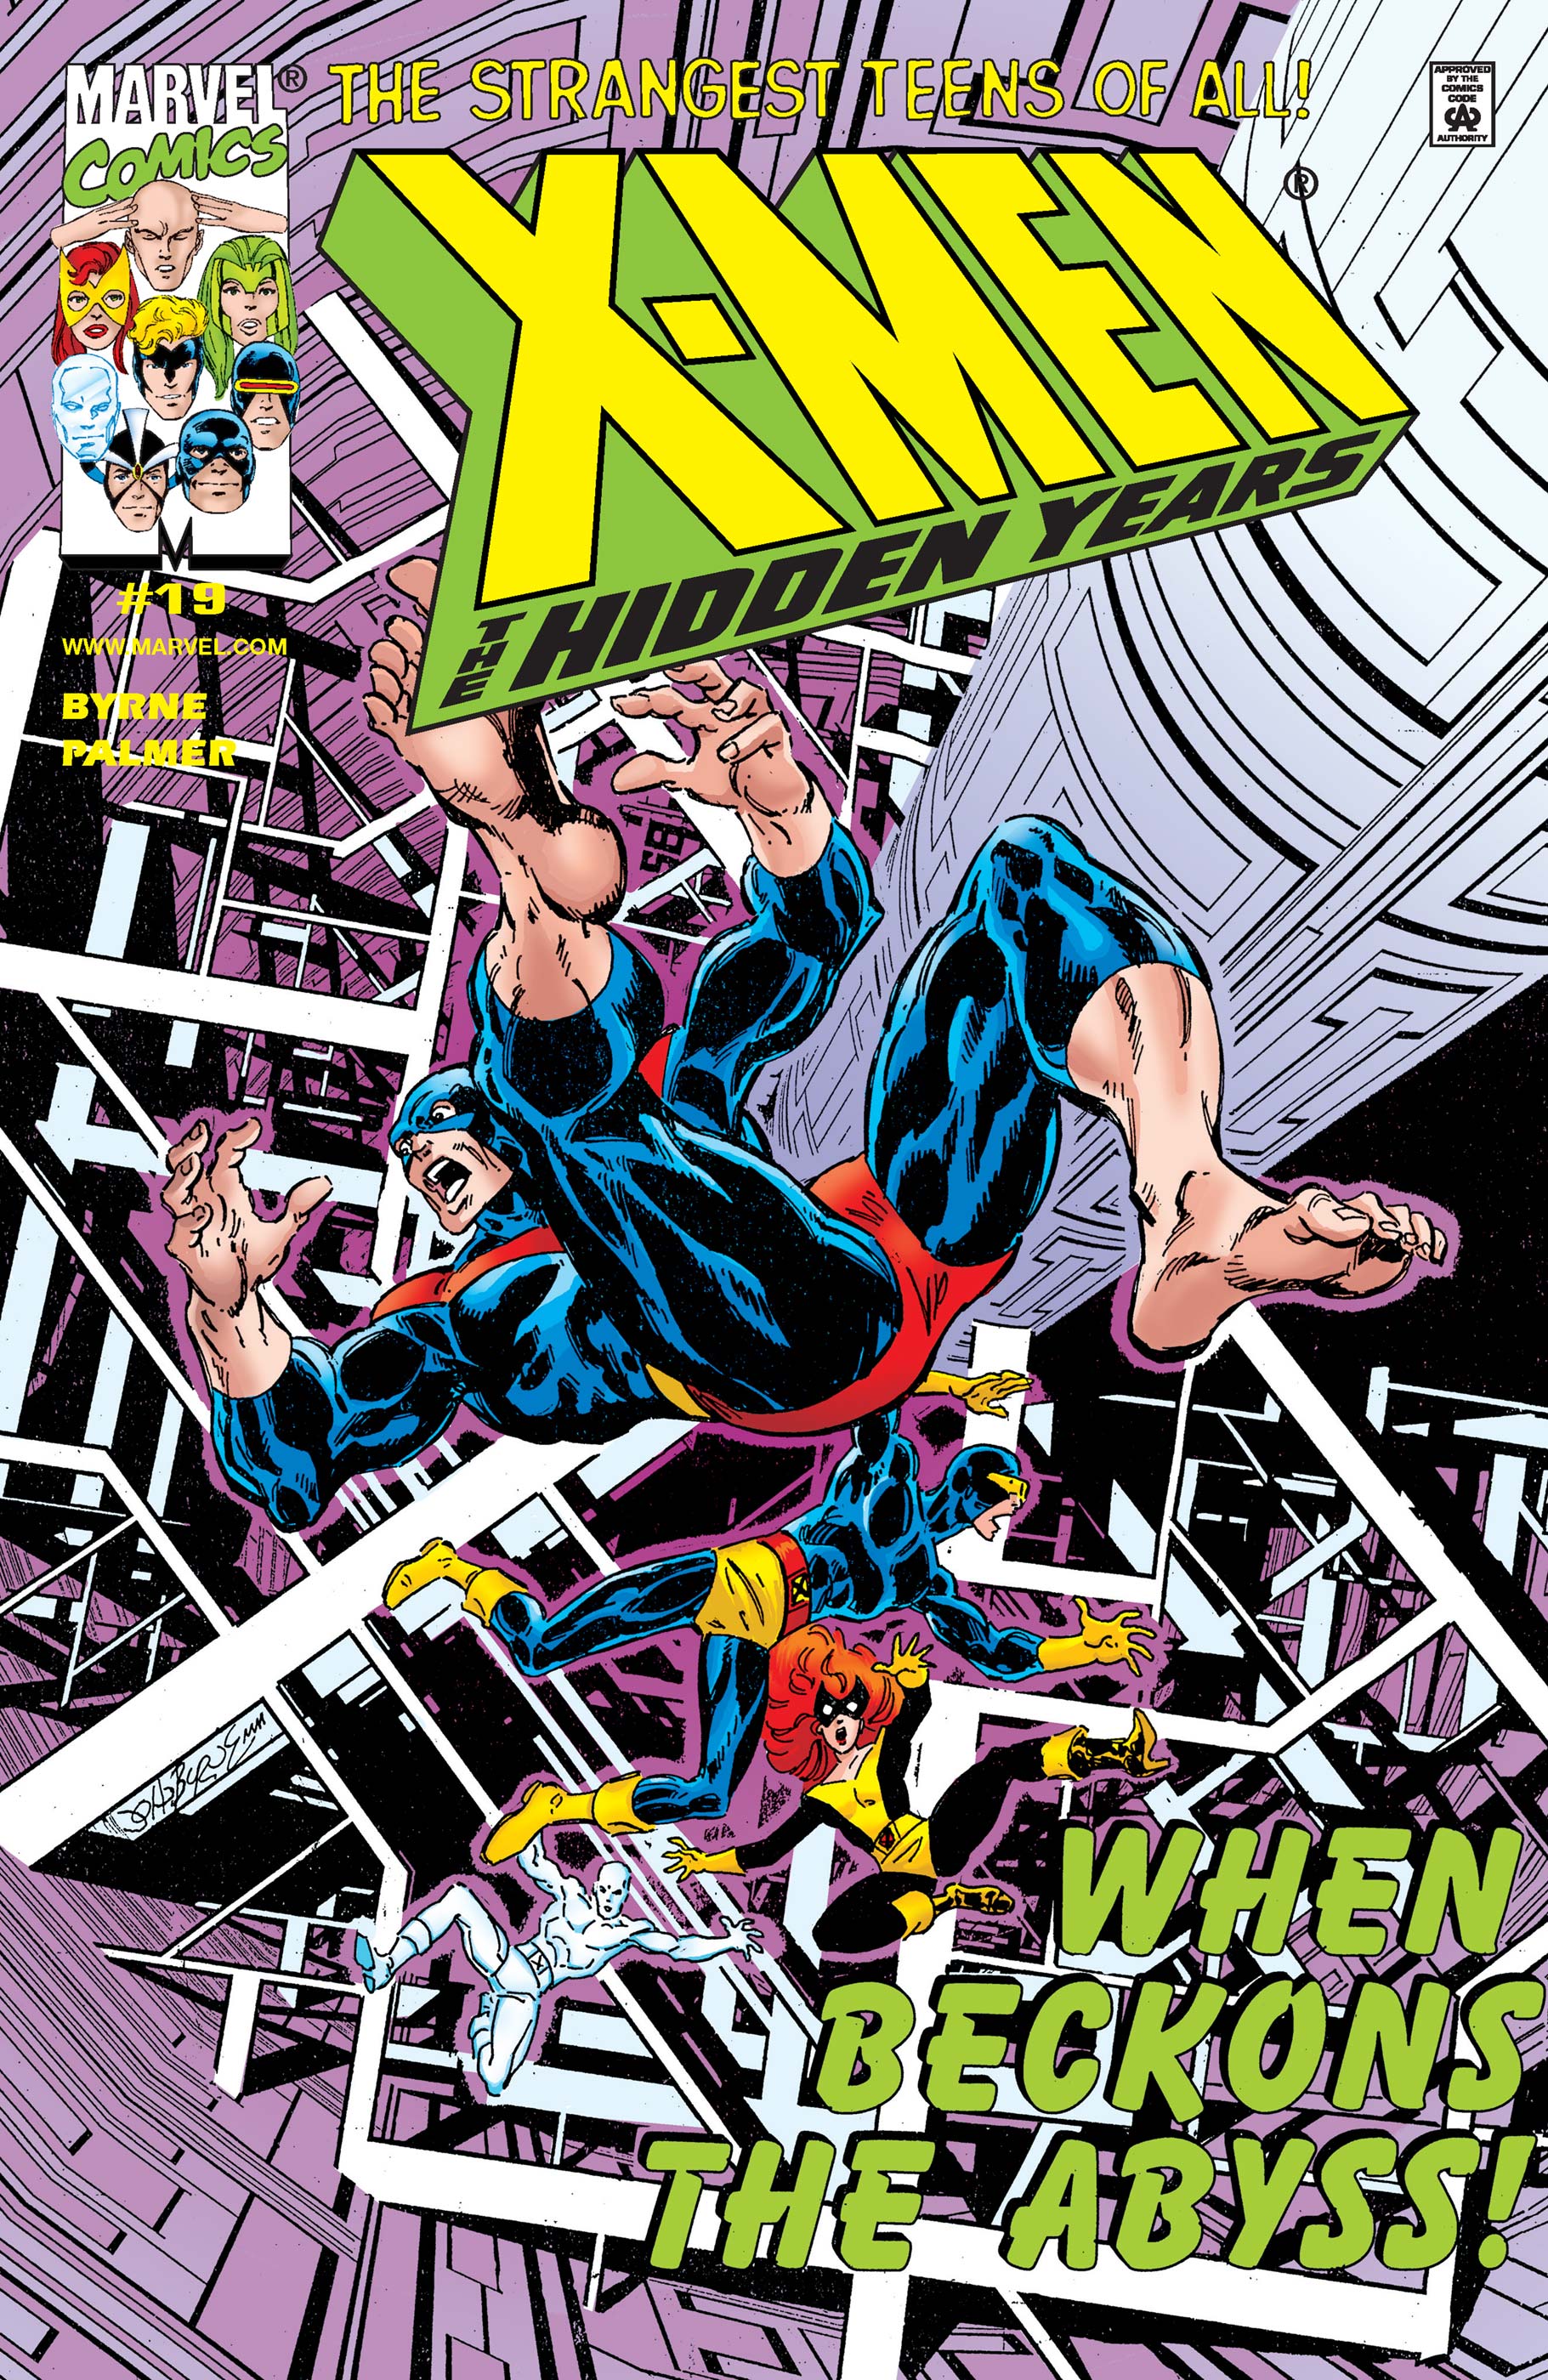 X-Men: The Hidden Years (1999) #19